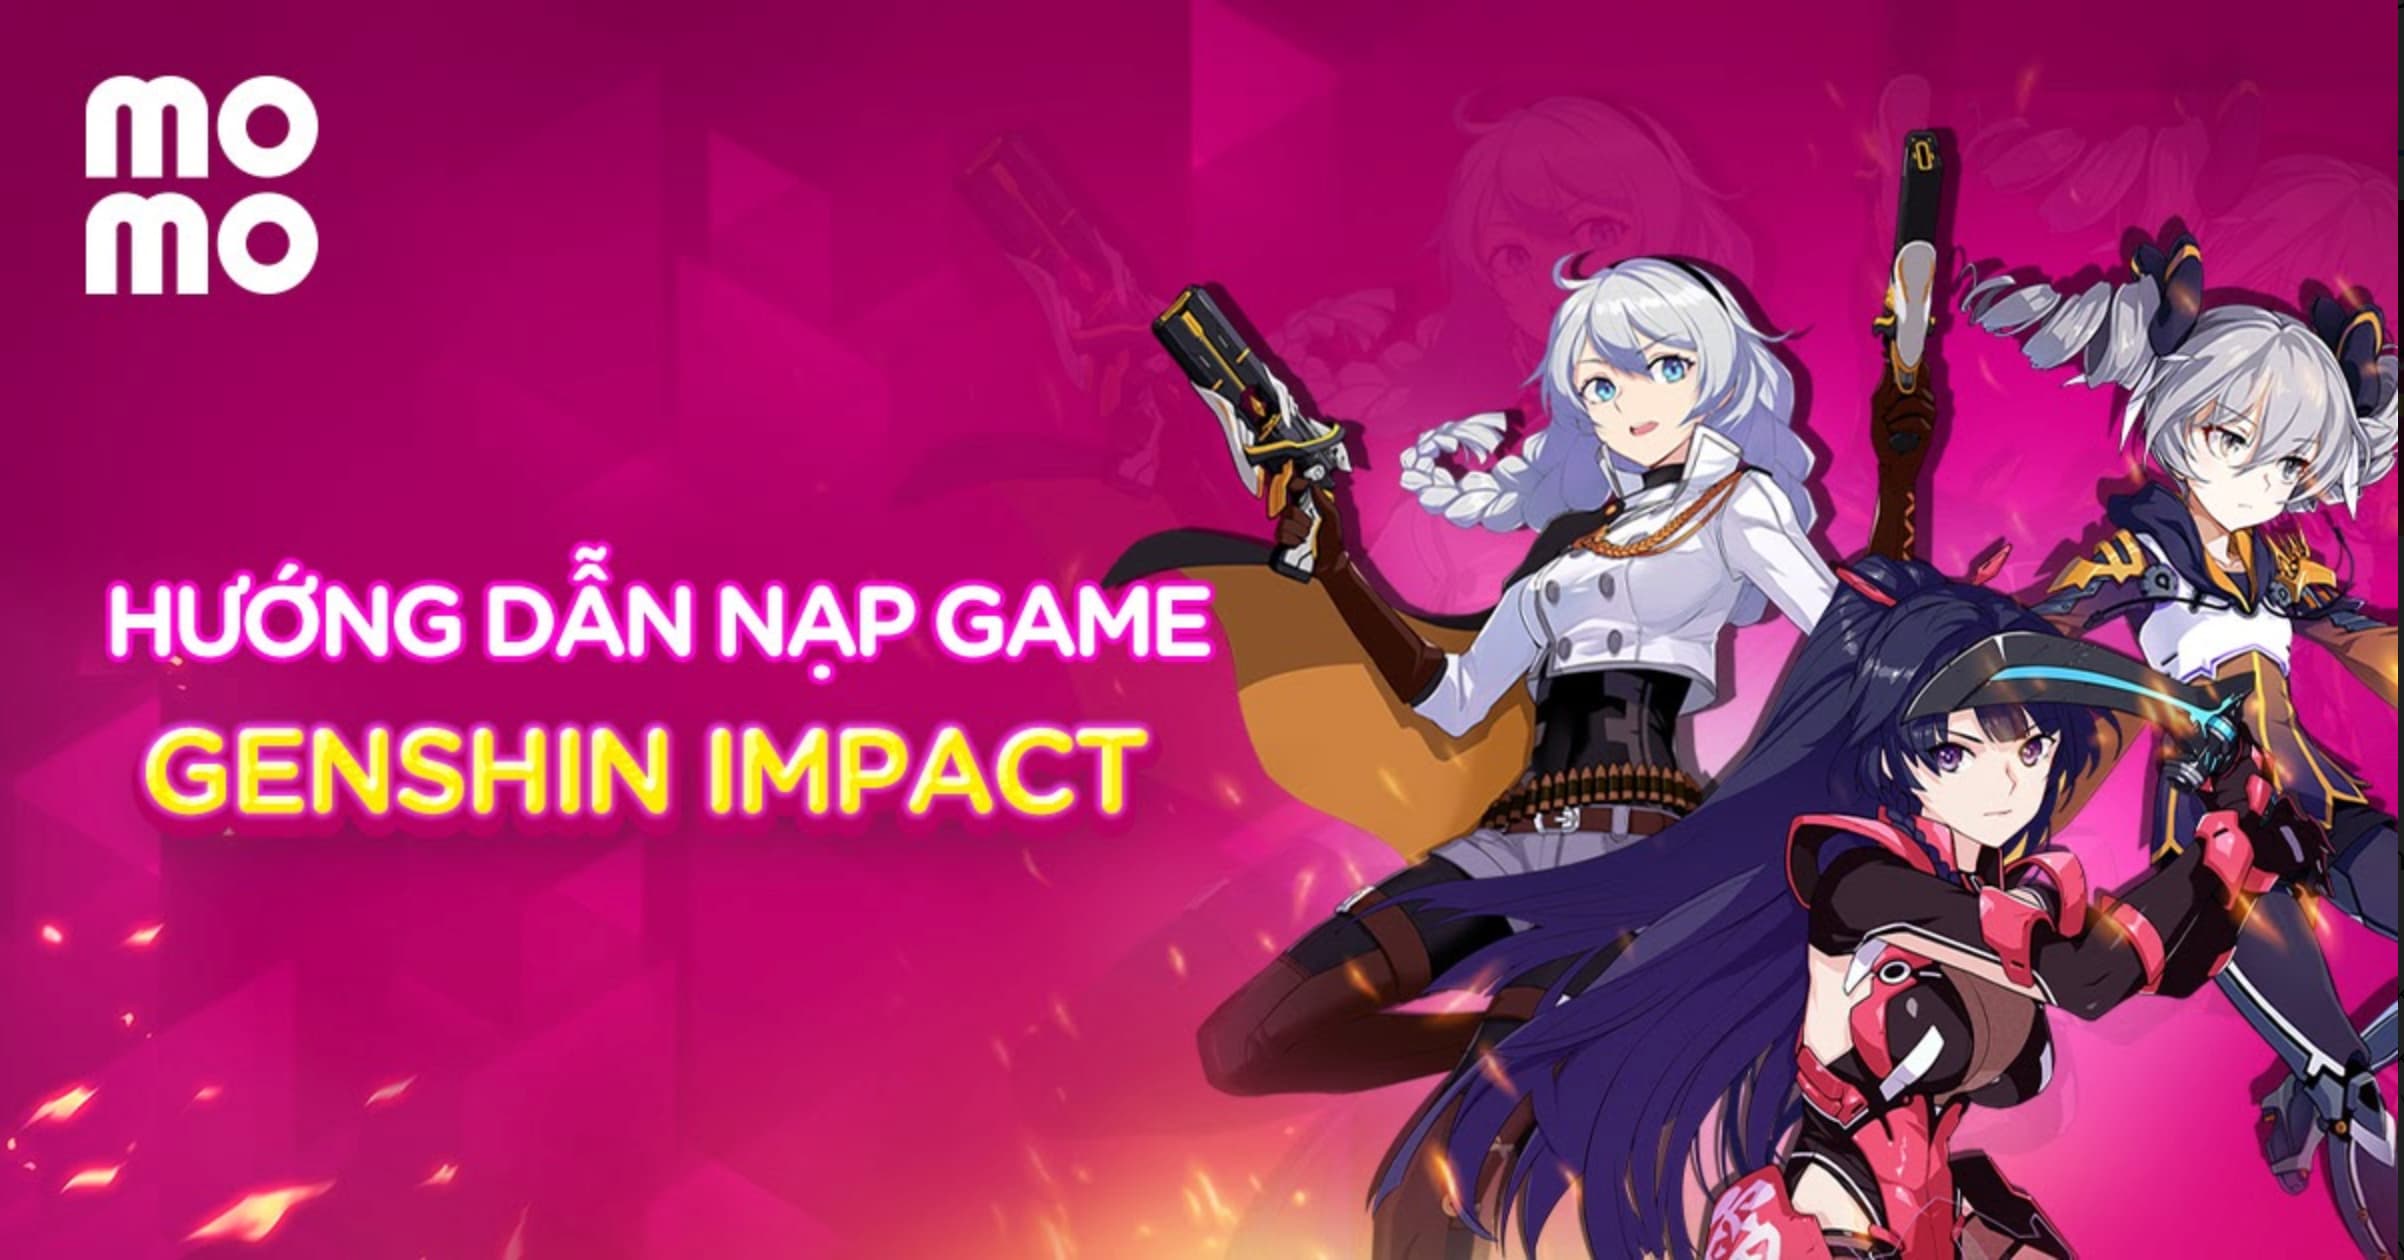 Hướng dẫn nạp game Genshin Impact trên Google Play/App Store qua MoMo